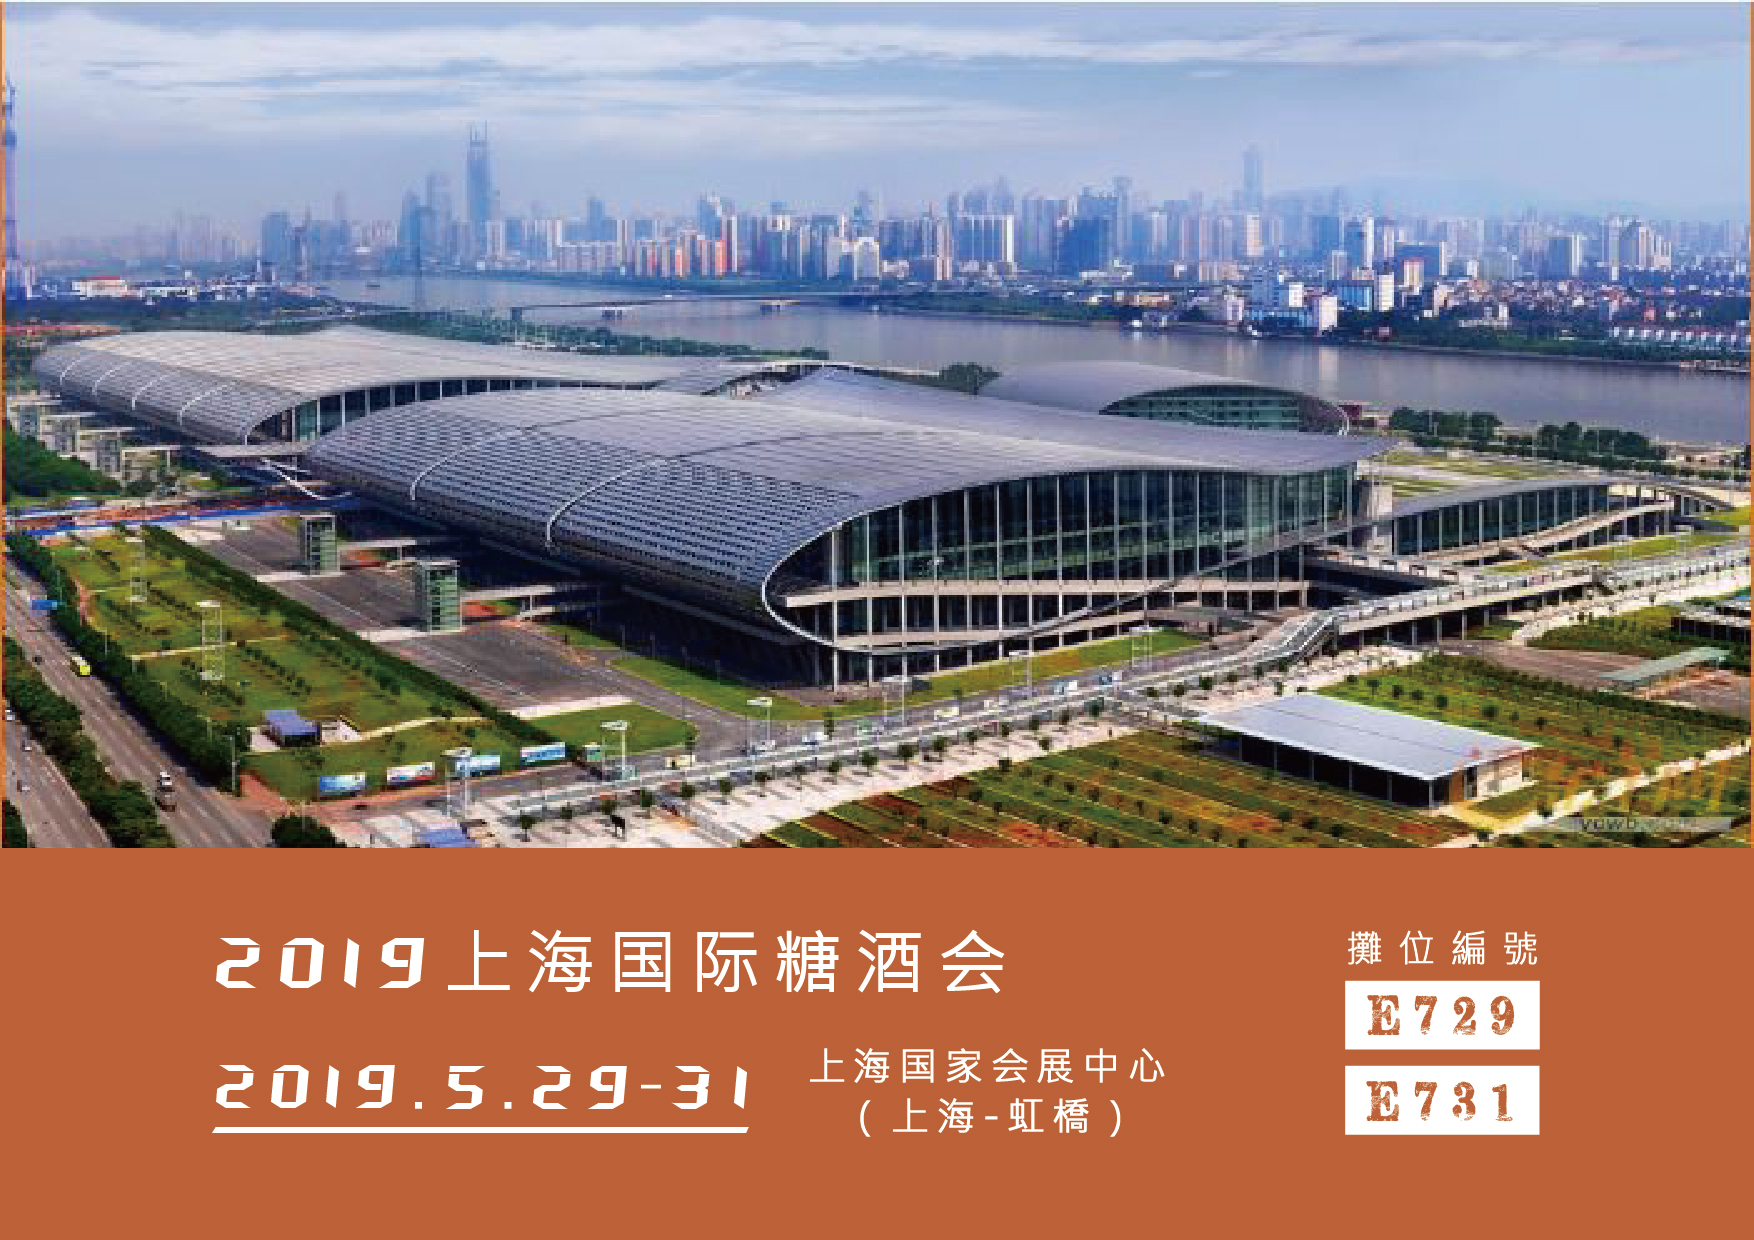 2019年5月29-30日上海國際糖酒會